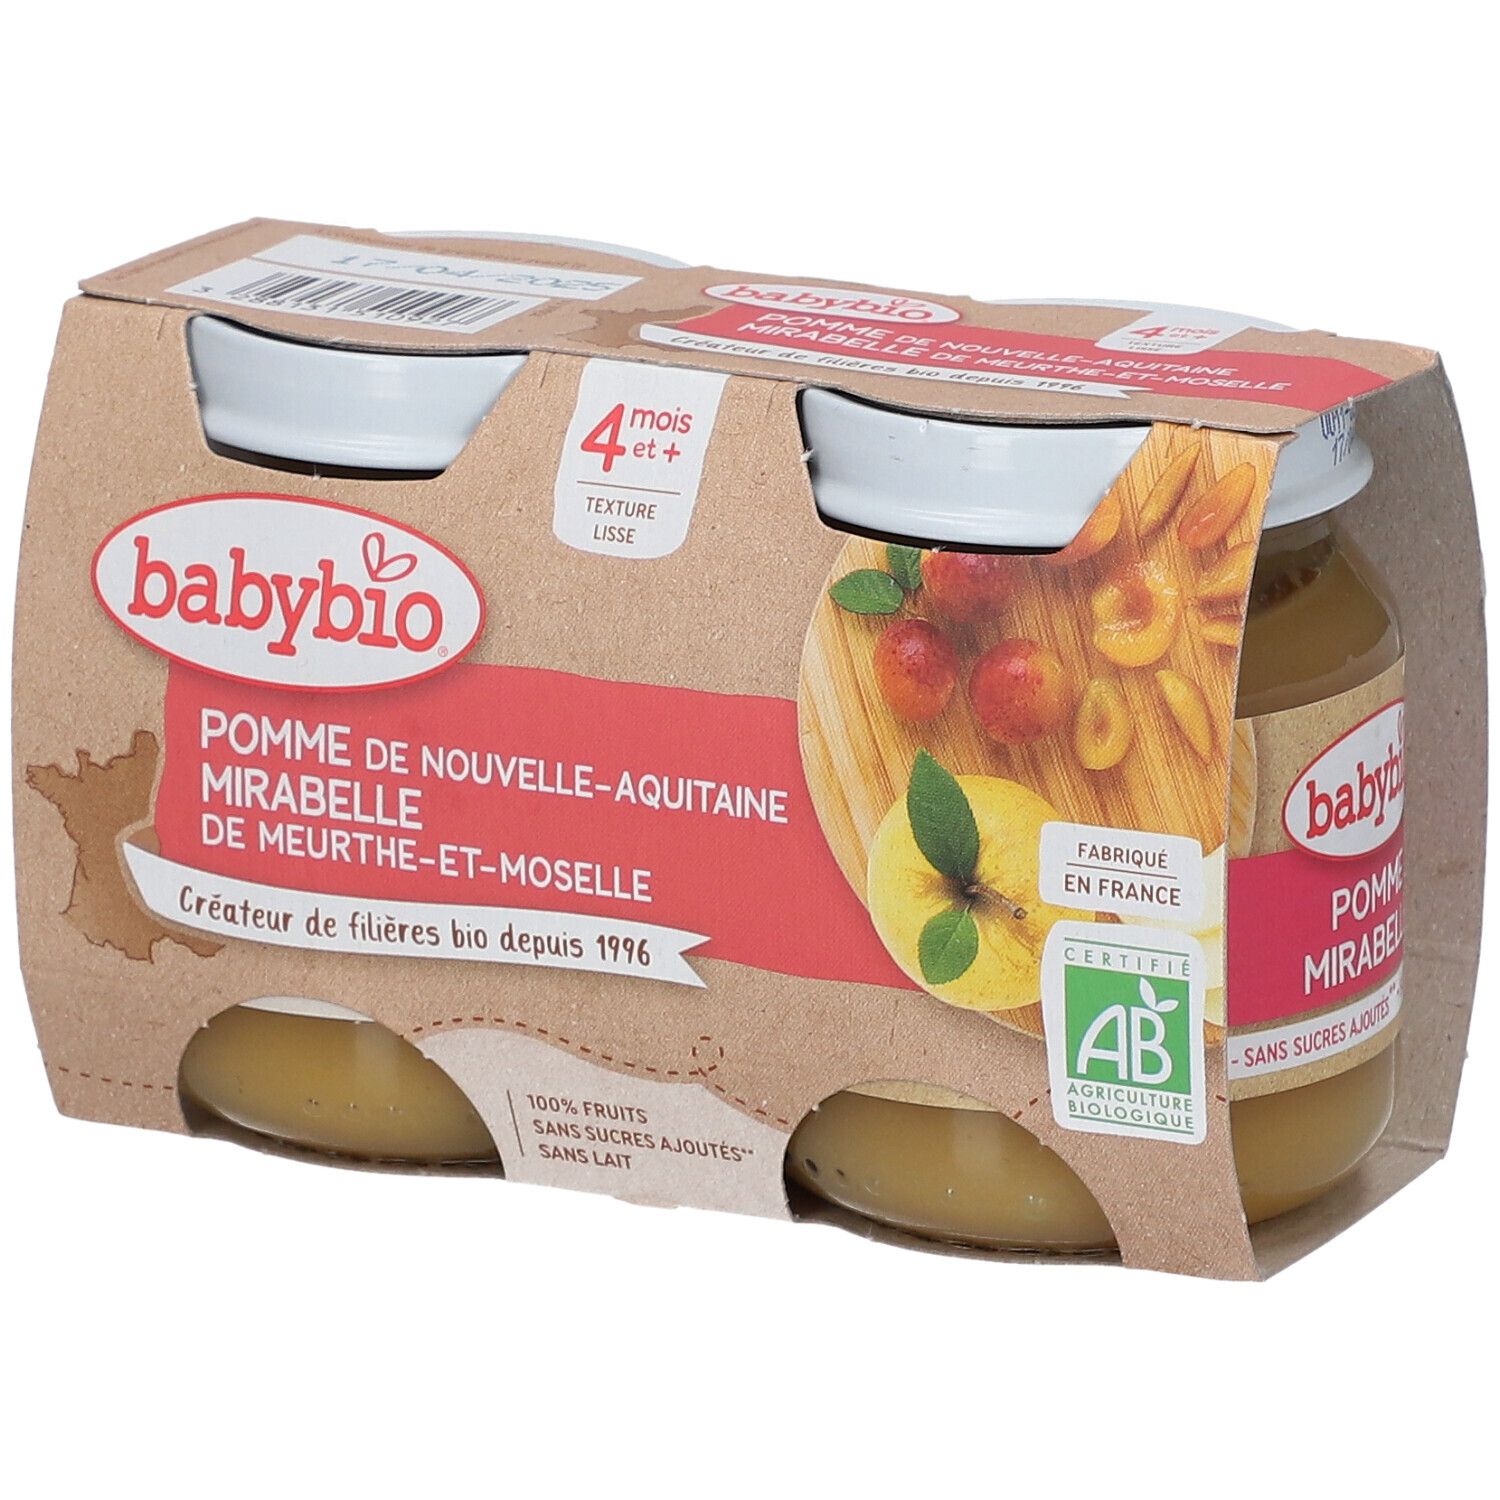 Babybio Gourdes Pommes de Nouvelle-Aquitaine, Mirabelle de Meurthe-et-Moselle